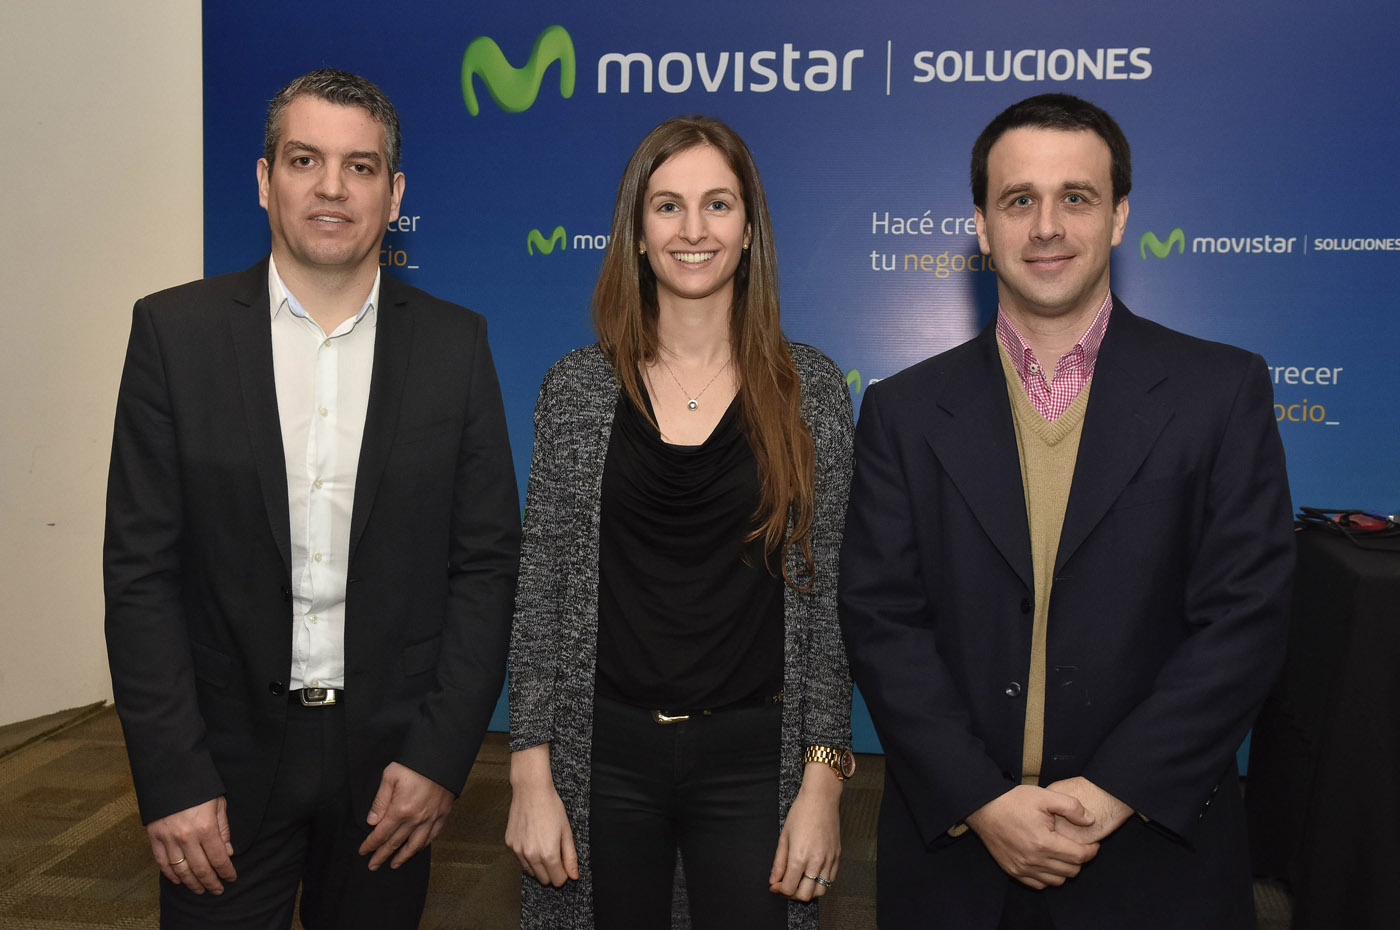 Movistar presentó su portfolio de servicios para empresas de logística y transporte